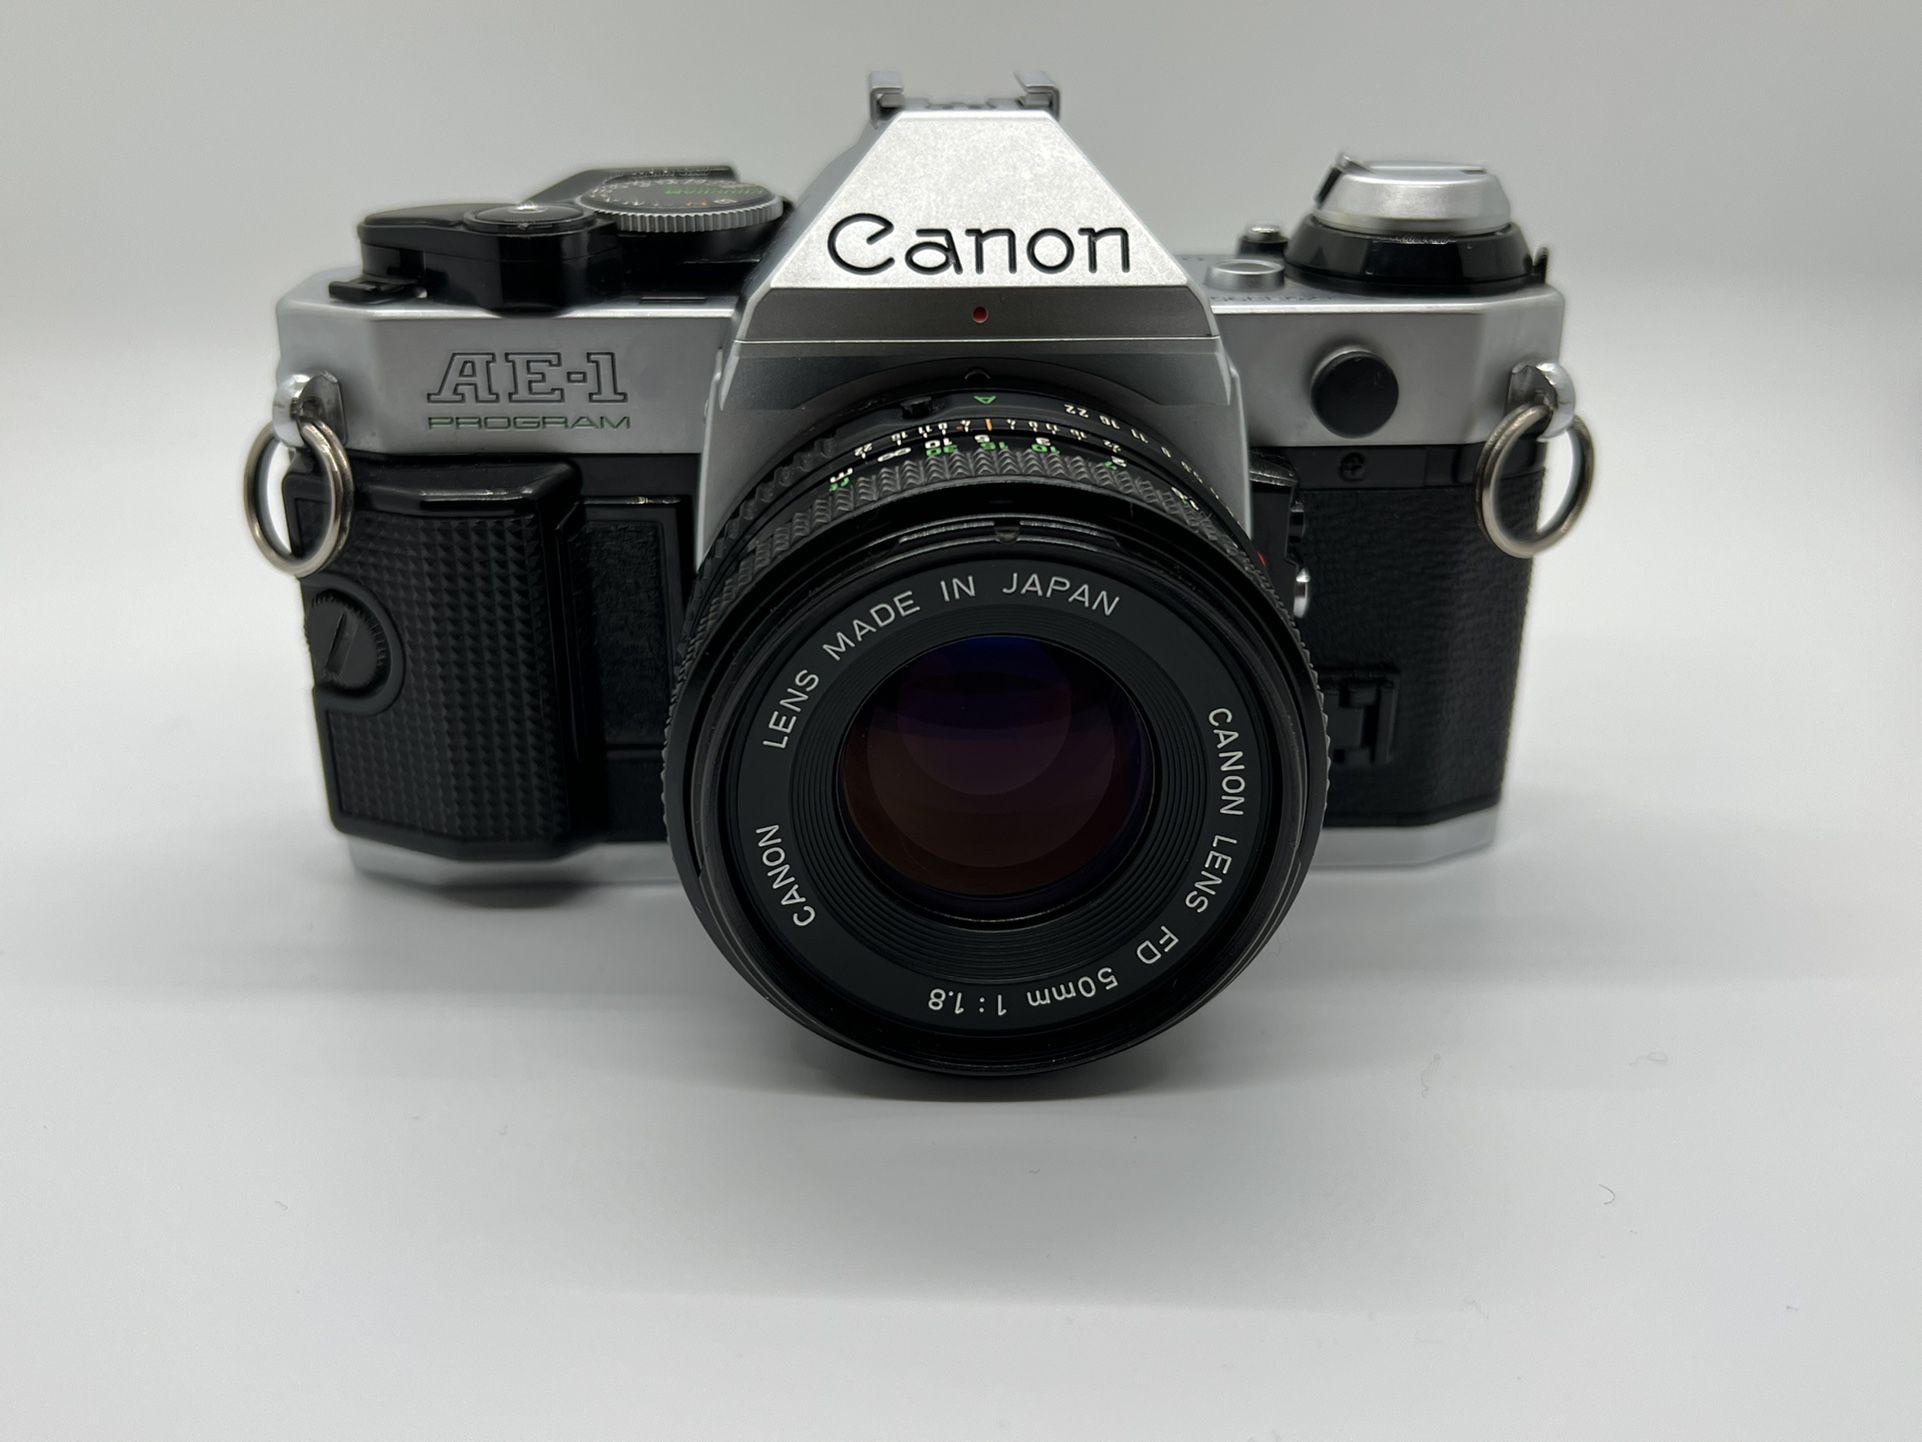 Canon AE-1 Program Camera $215